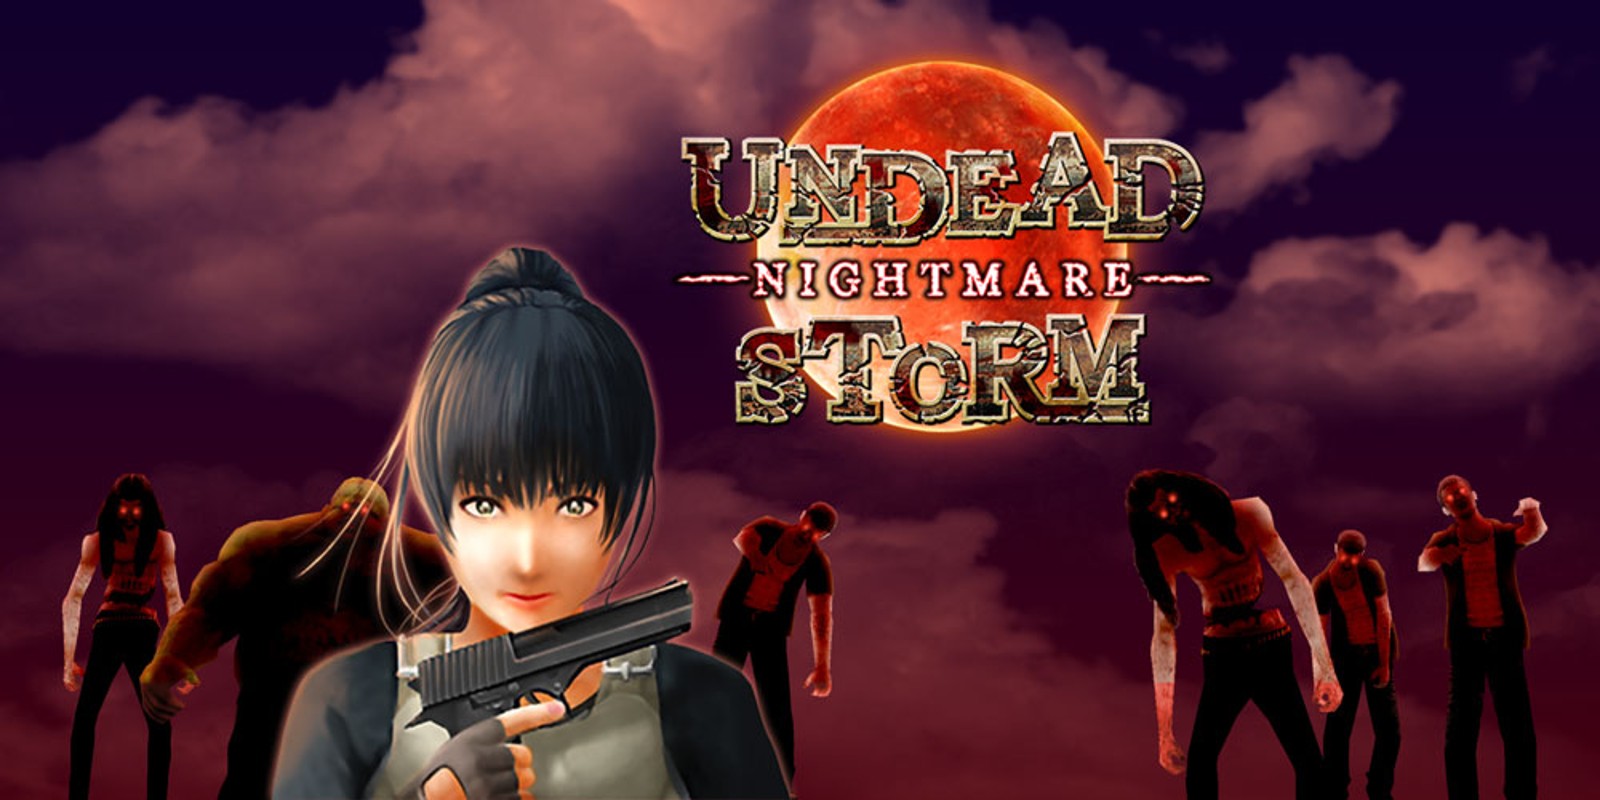 Undead Storm Nightmare, Nintendo 3DS download software